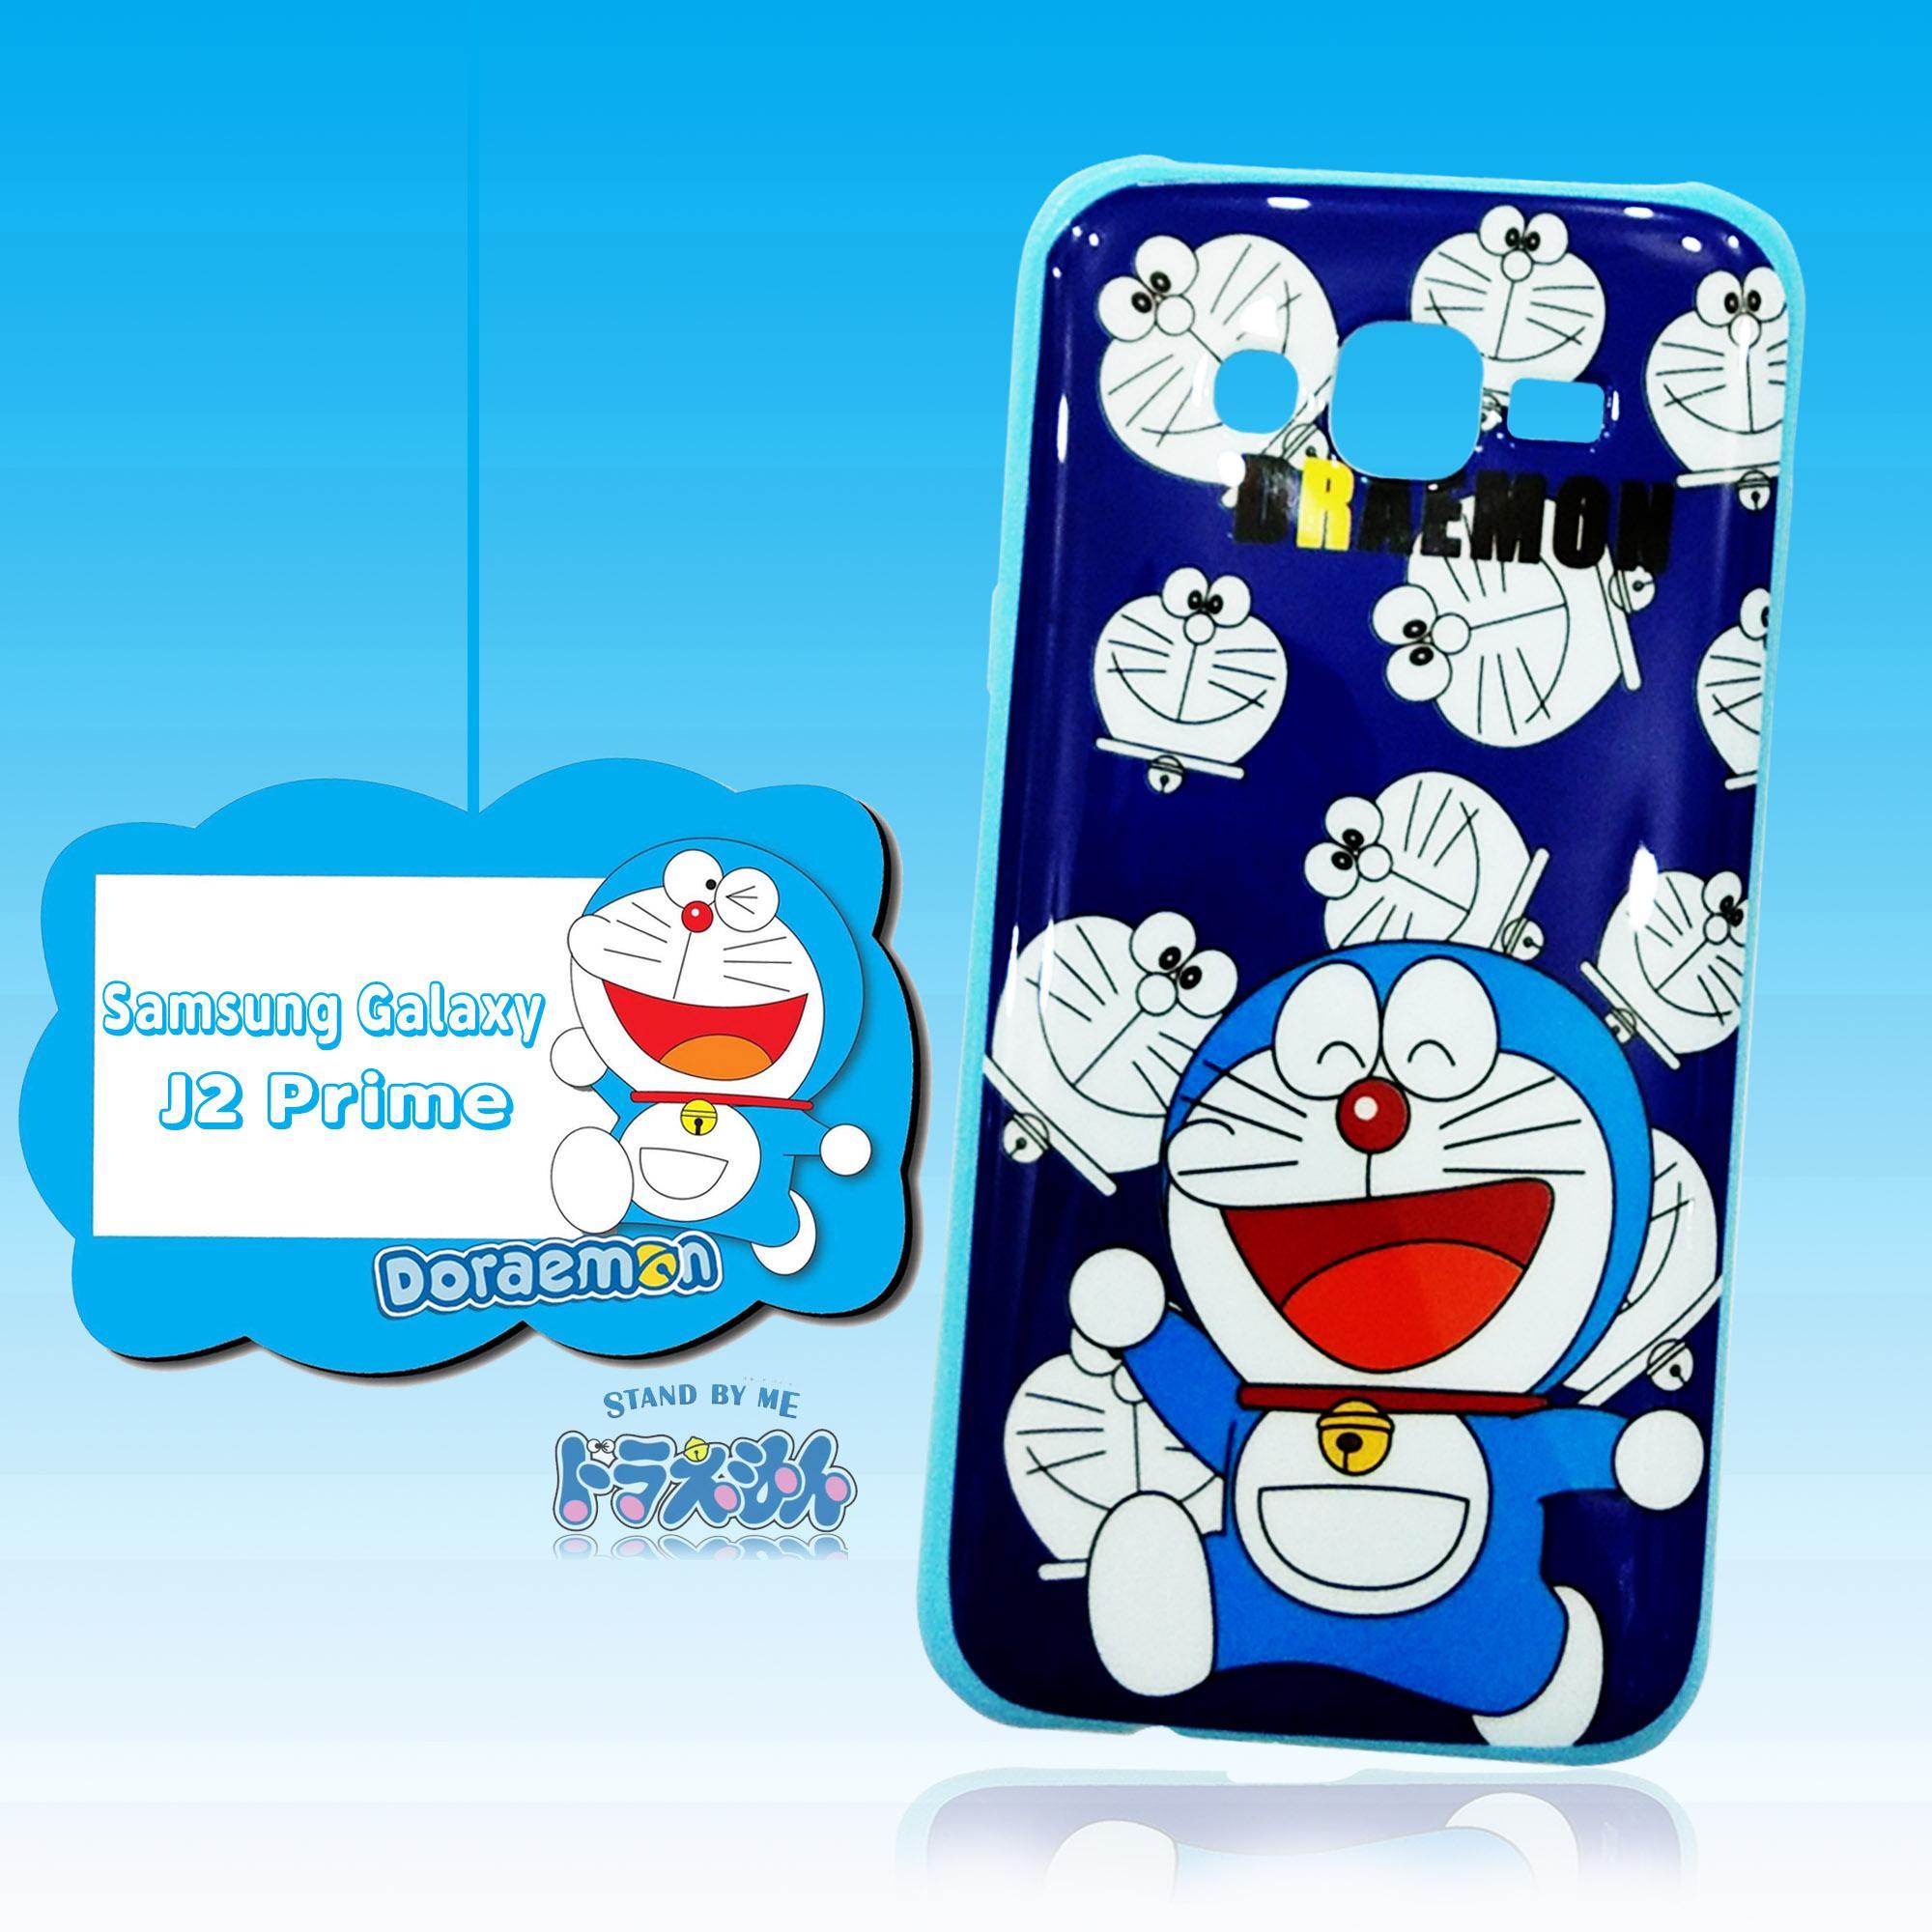 Softcase Casing For Samsung J2 Prime J7 Prime A70 J1 Ace J4 Plus M10 Case 3d Karakter Model Doraemon Lazada Indonesia